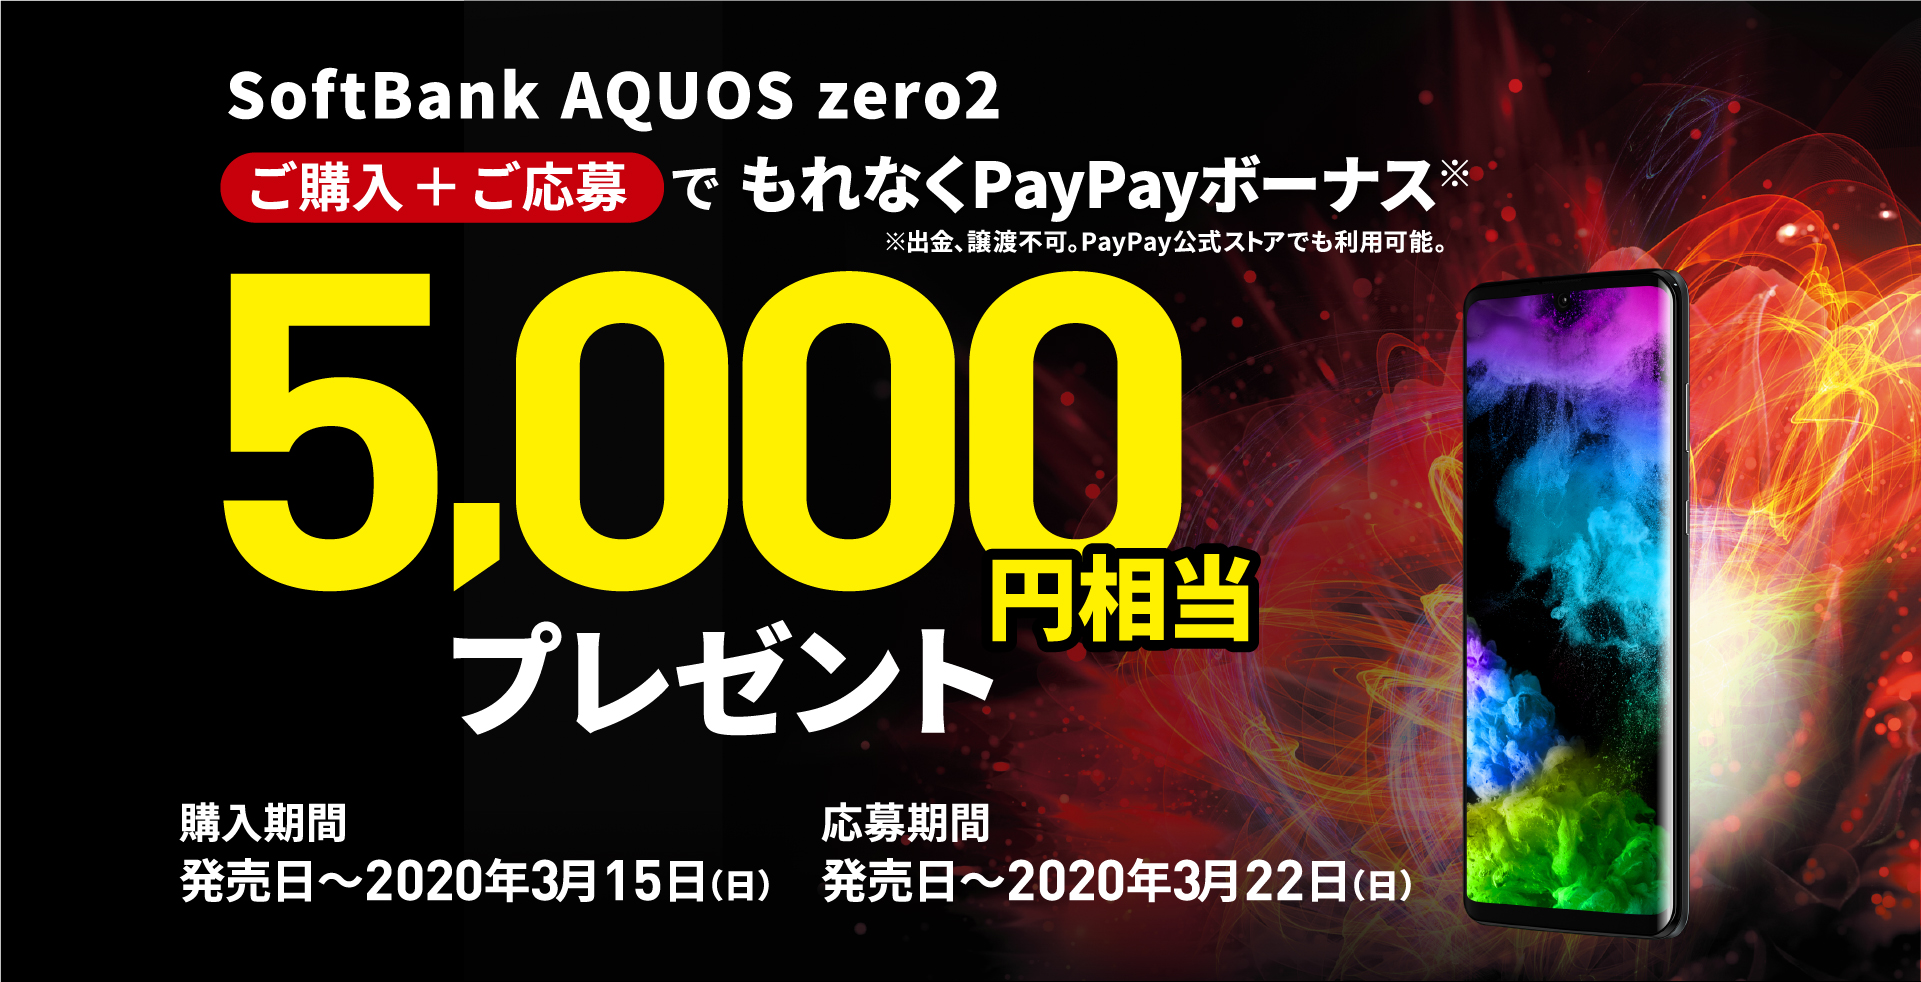 ソフトバンク、SoftBank向けフラッグシップスマホ「AQUOS zero2」を1月31日に発売！価格は9万5040円で、PayPay